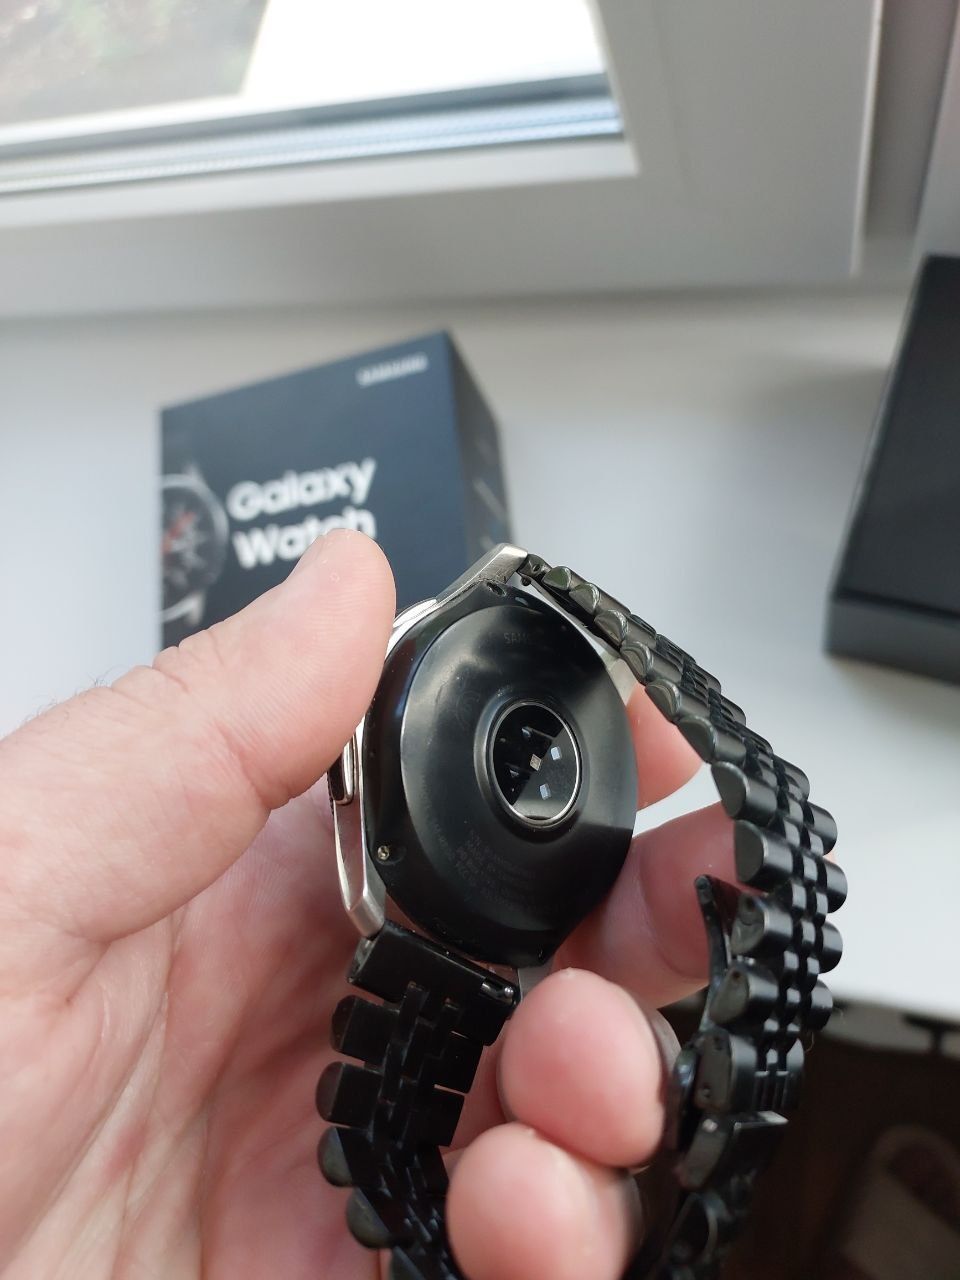 Samsung Galaxy Watch classic 46 mm